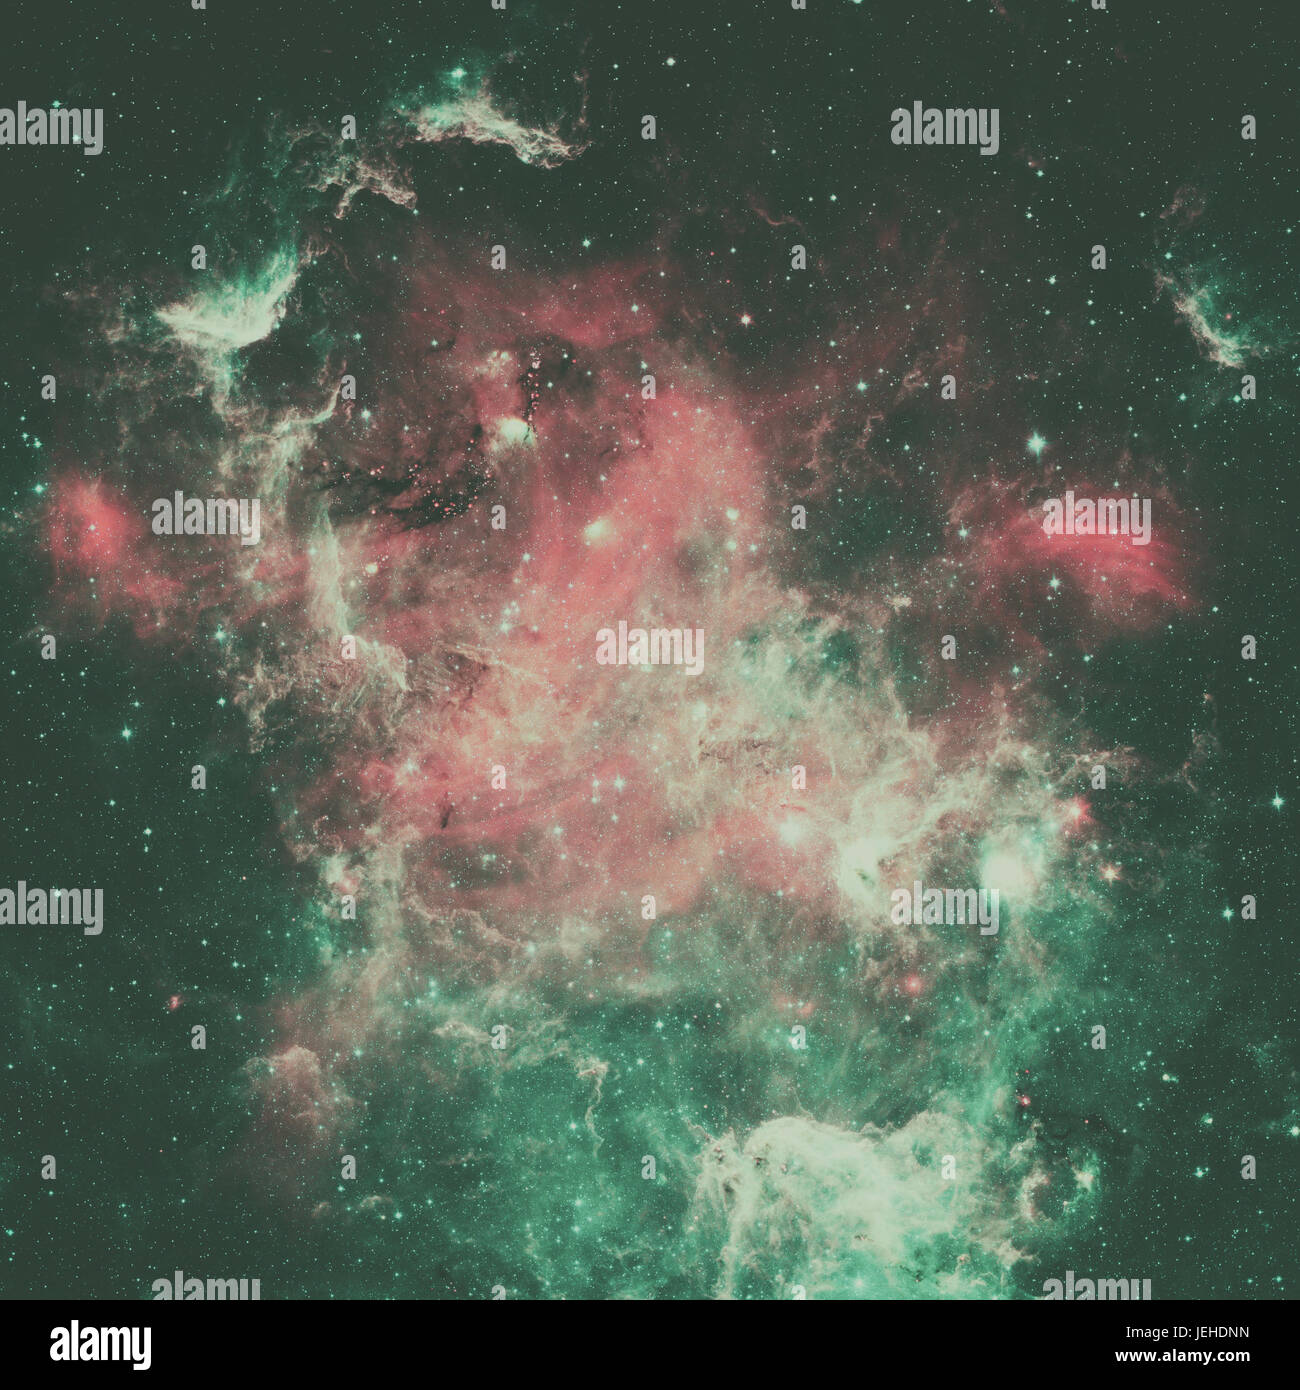 La nébuleuse de l'Amérique du Nord est une nébuleuse dans la constellation du Cygne, à proximité de Deneb. Vue à partir de l'infrarouge au télescope spatial Spitzer de la NASA. Retouch Banque D'Images